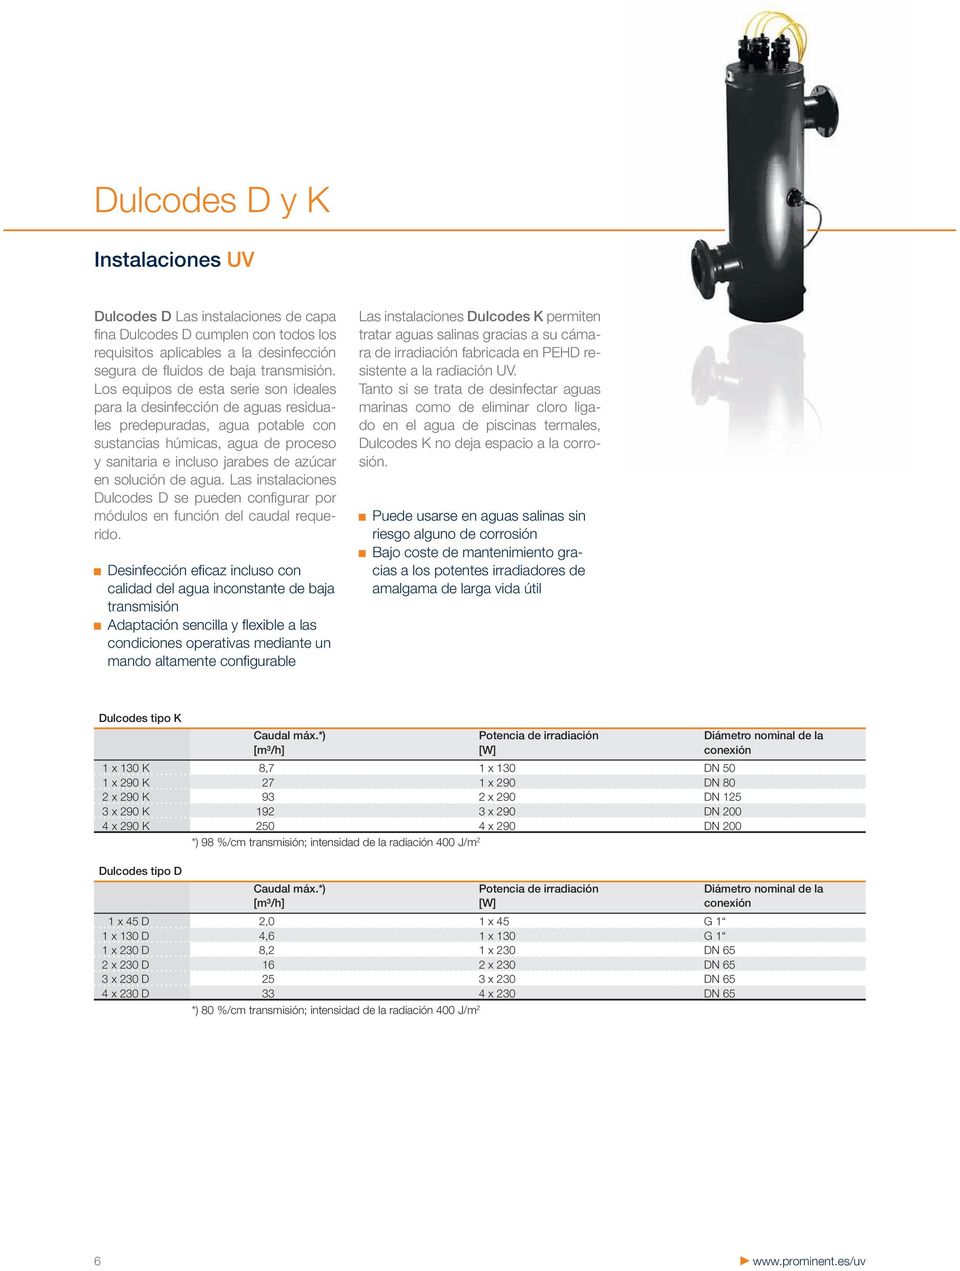 de agua. Las instalaciones Dulcodes D se pueden confi gurar por módulos en función del caudal requerido.